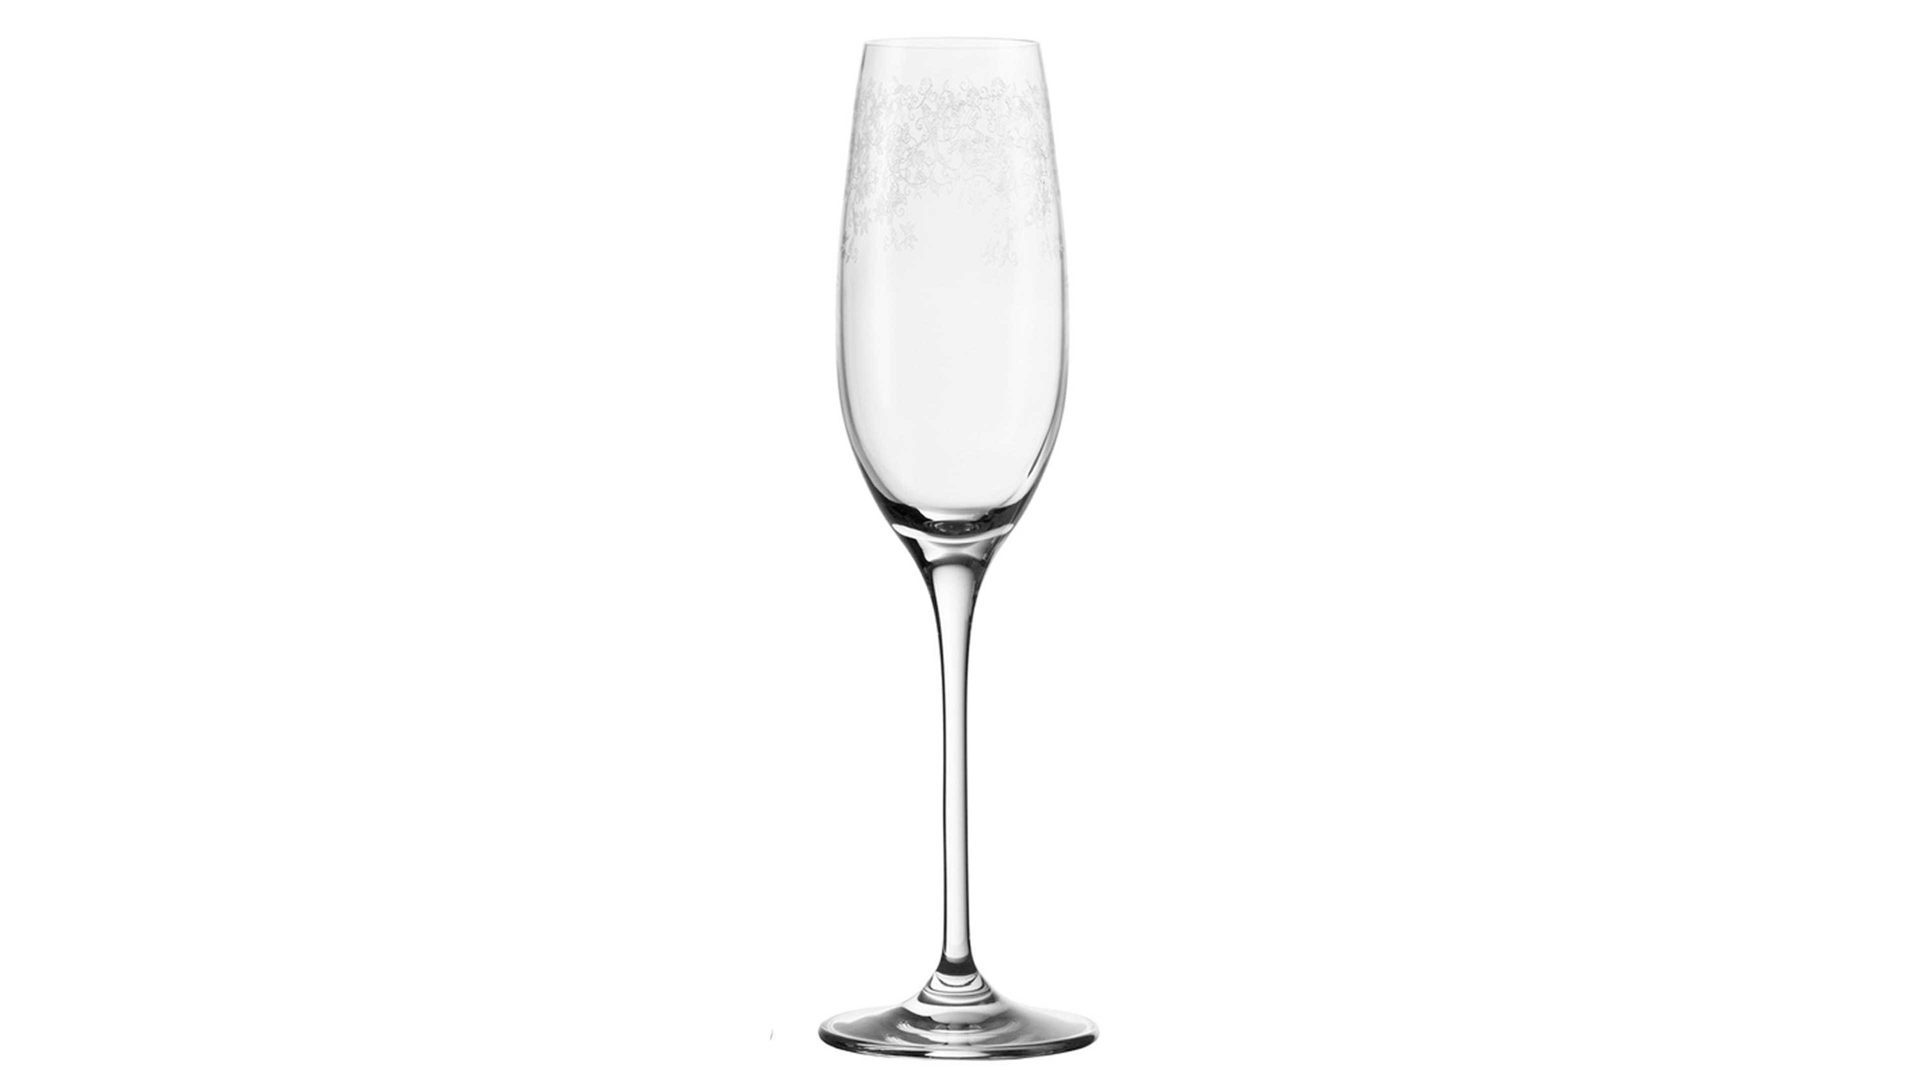 Sektglas Leonardo | glaskoch aus Glas in Transparent LEONARDO Sektglas Chateau TEQTON®-Klarglas - ca. 160 ml Nutzinhalt